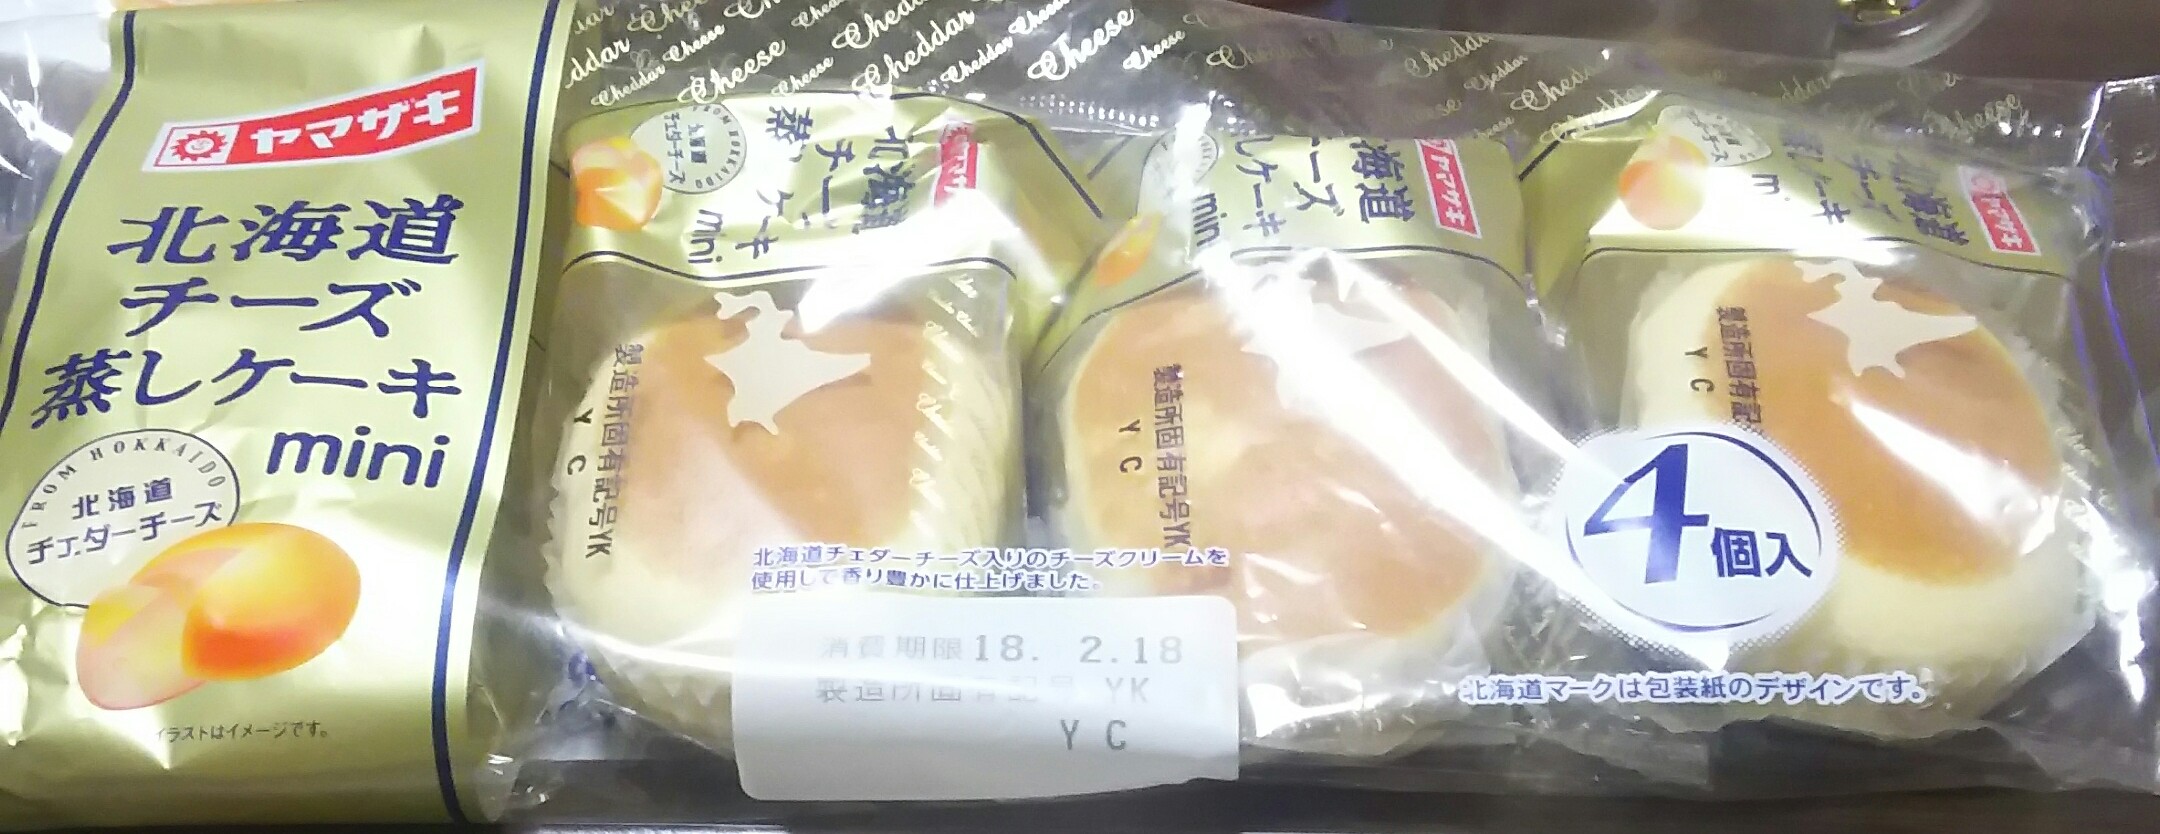 北海道チーズ蒸しケーキ mini(ヤマザキ)感想・レビュー